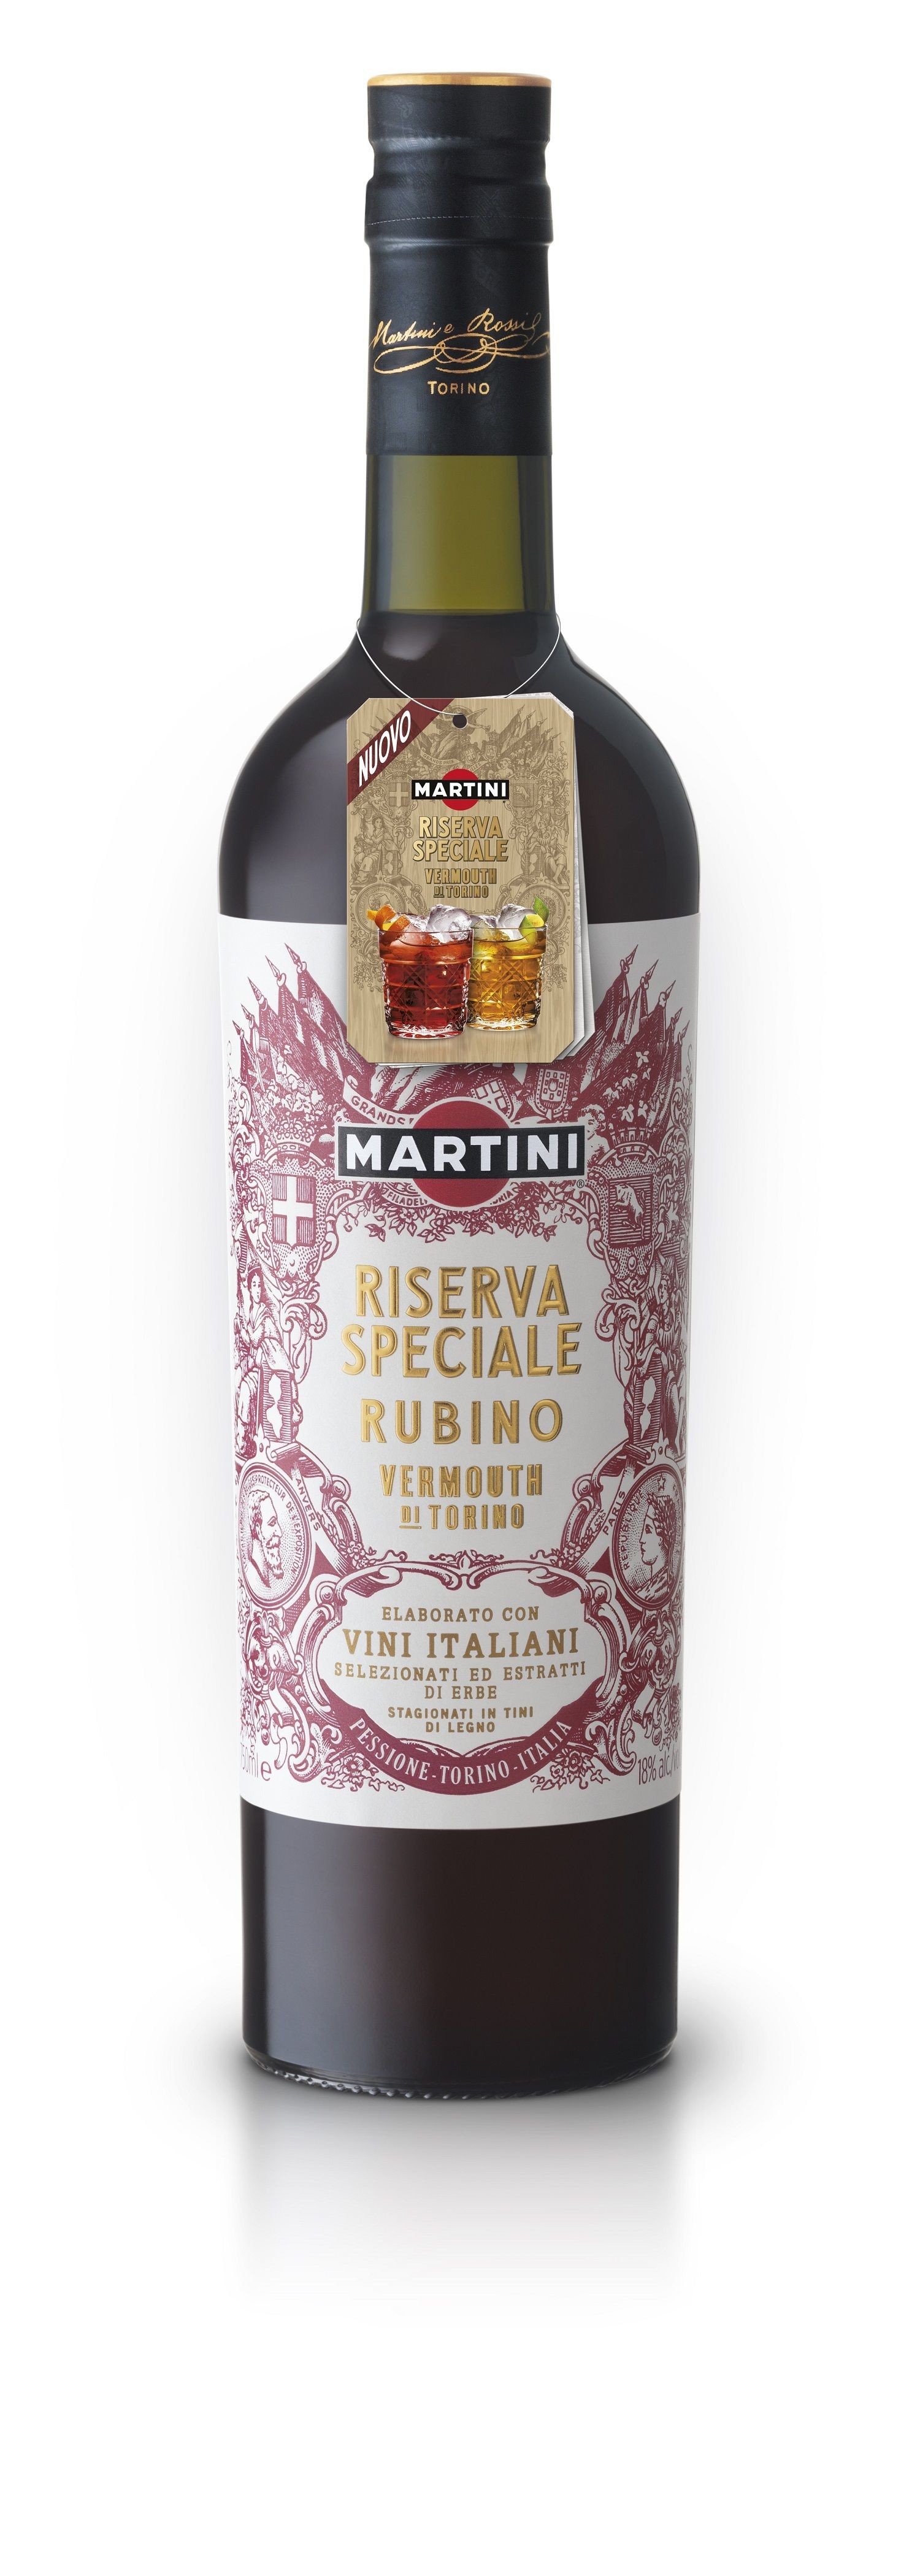 Martini Vermouth Riserva Speciale Rubino 75cl 18%